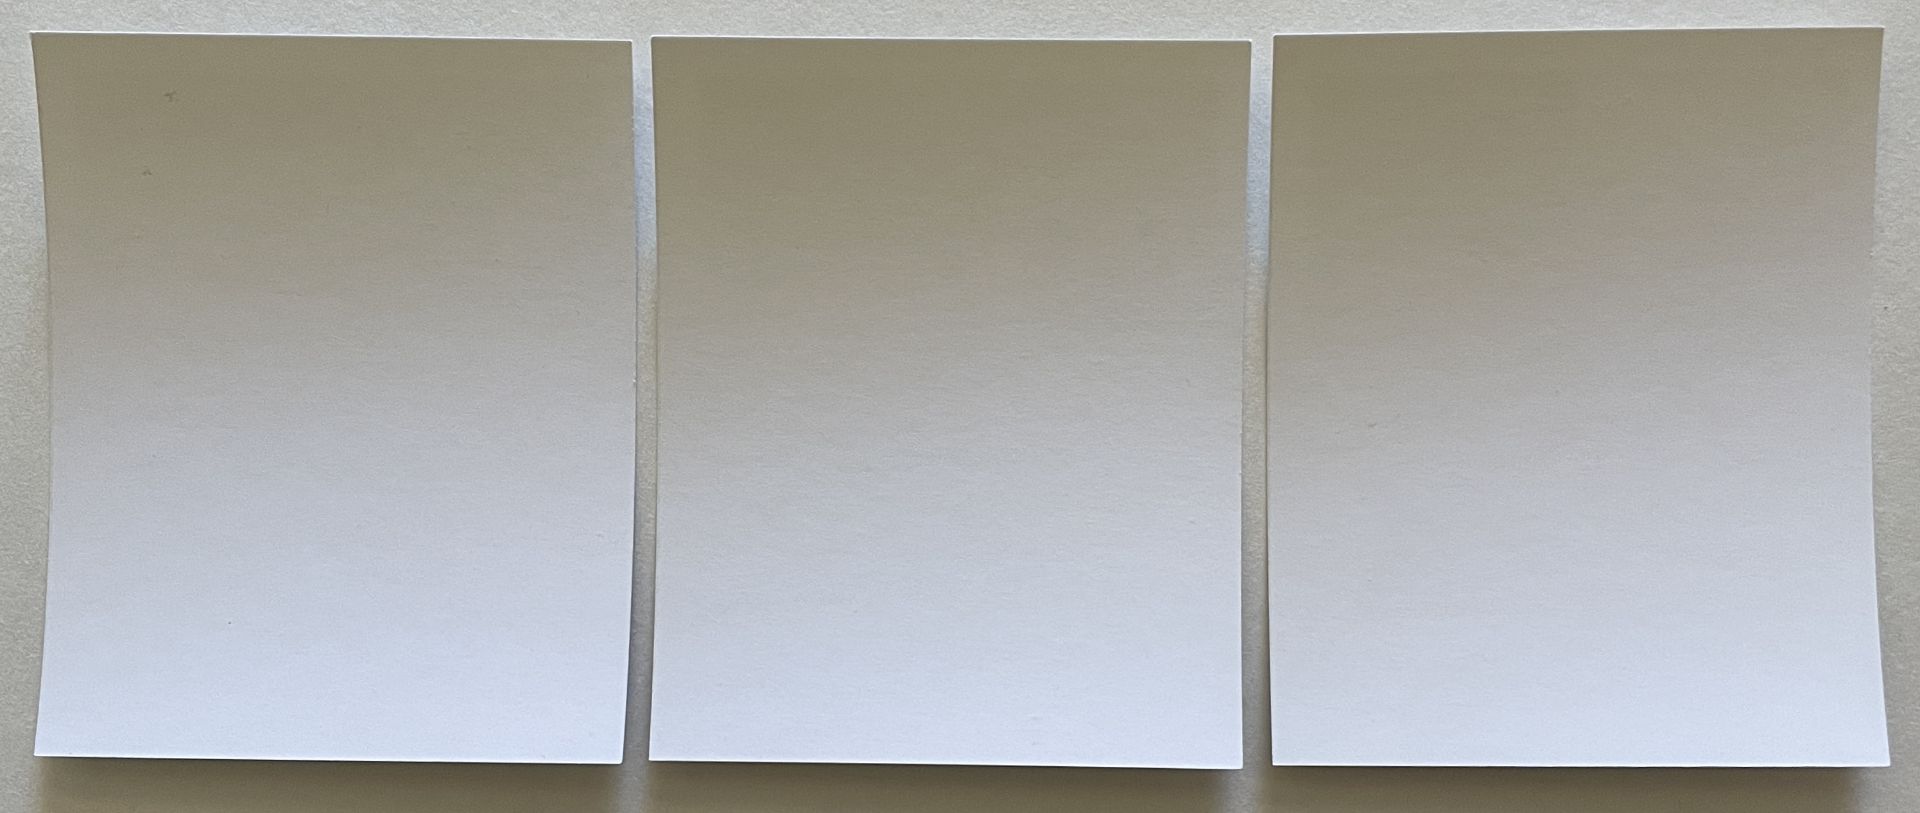 Nobuyoshi Araki Set of Three Polaroid Prints, Untitled - Image 6 of 6